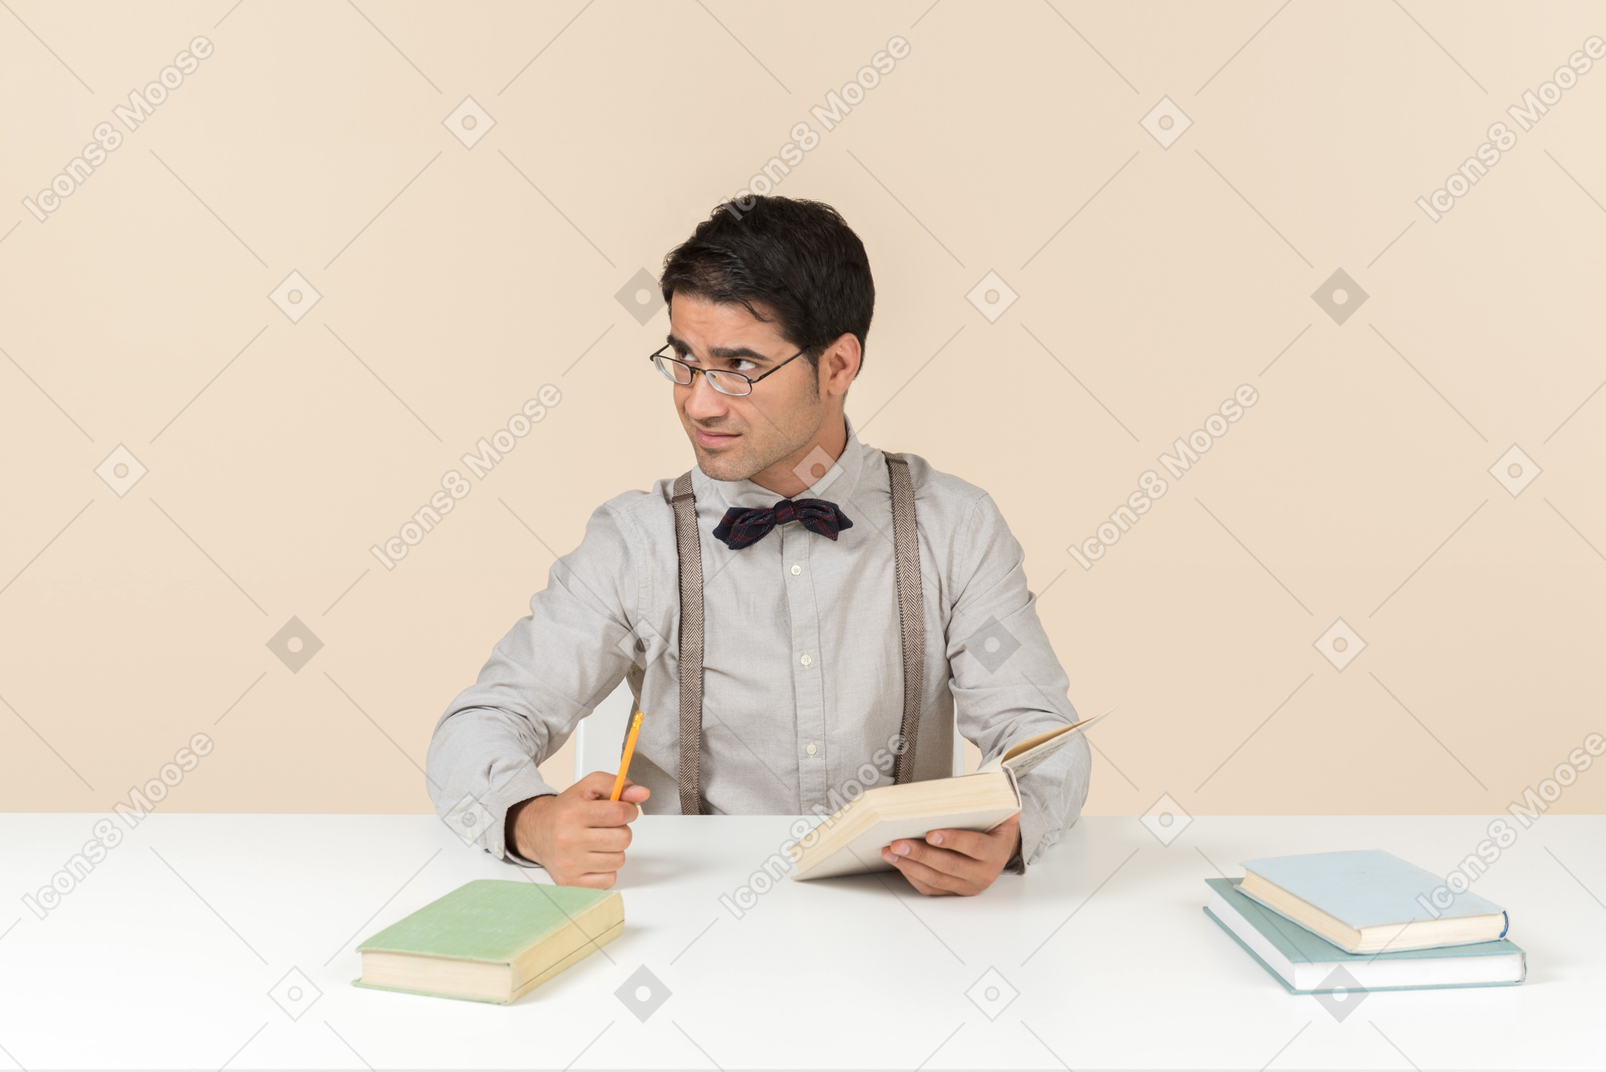 Professor am tisch sitzen und bücher lesen